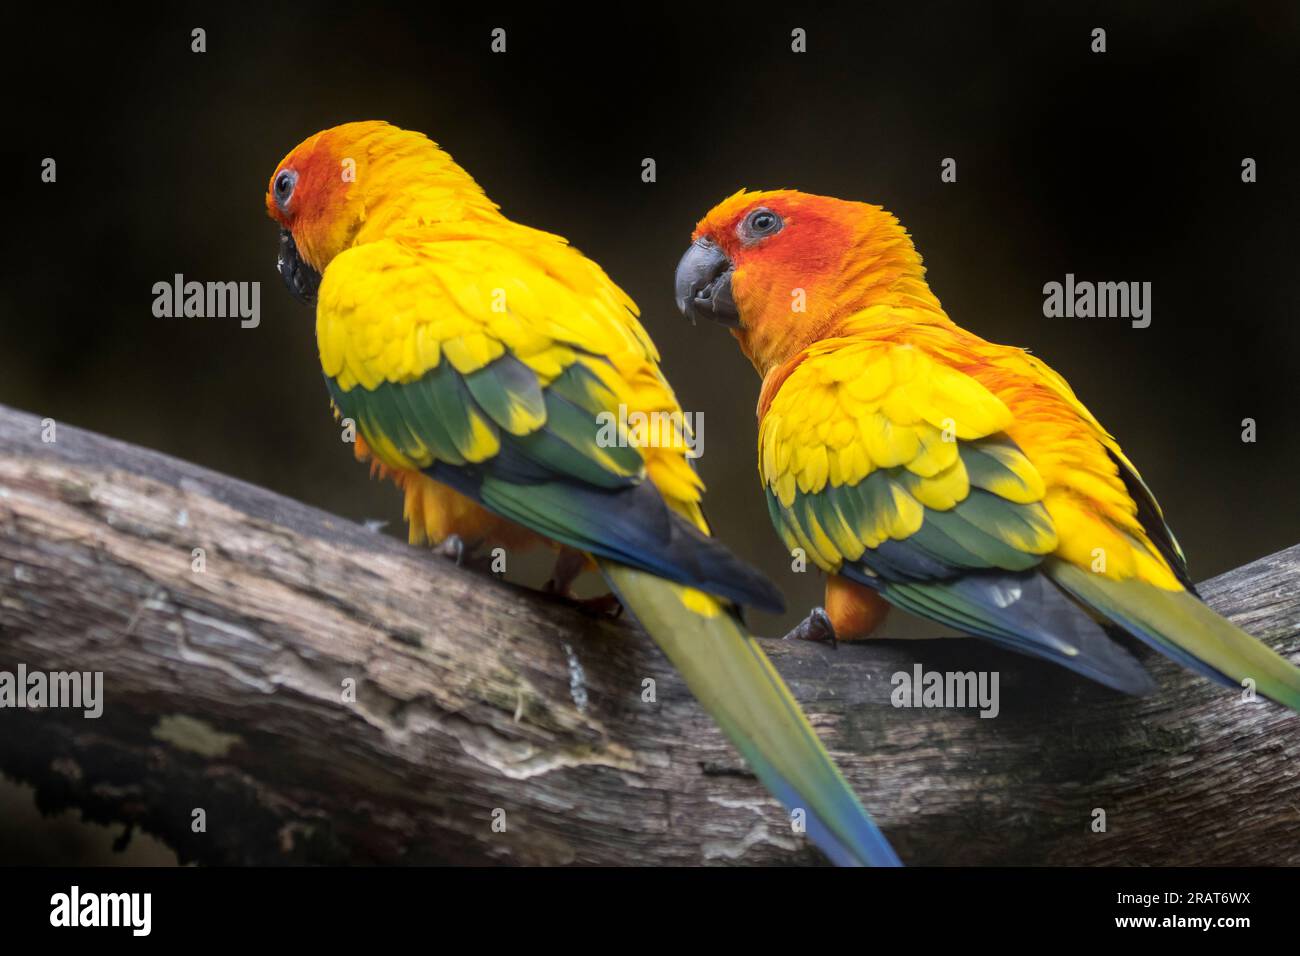 Zwei Sonnensittiche/Sonnensittiche (Aratinga solstitialis) hoch oben in einem Baum, mittelgroß, farbenfroher Papagei, einheimisch im Nordosten Südamerikas Stockfoto